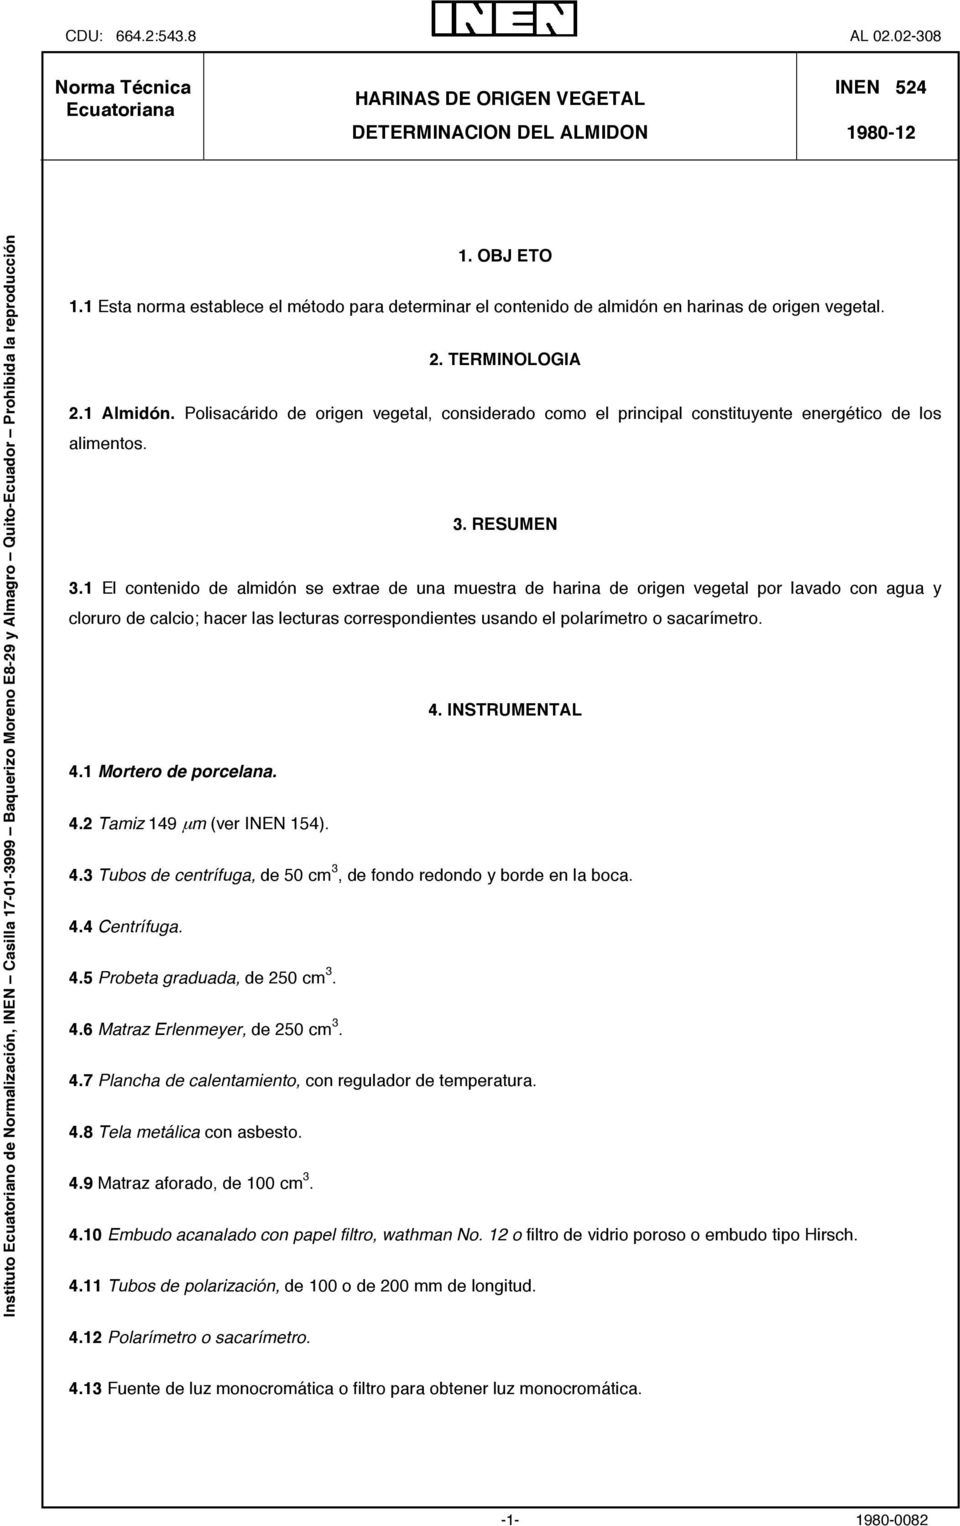 Quito-Ecuador Prohibida la reproducción 1. OBJ ETO 1.1 Esta norma establece el método para determinar el contenido de almidón en harinas de origen vegetal. 2. TERMINOLOGIA 2.1 Almidón.